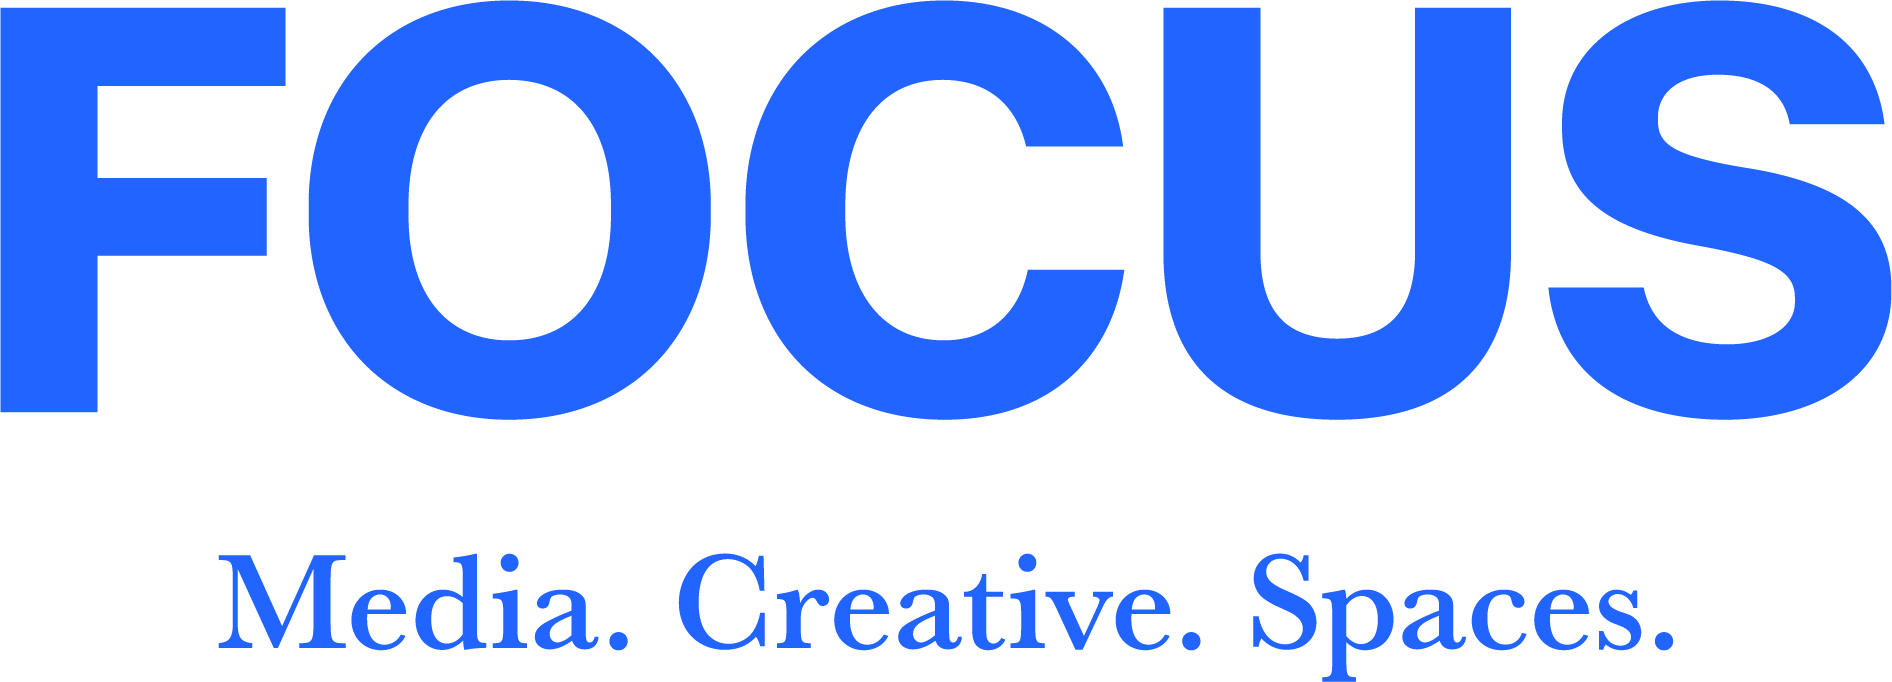 FOCUS_Blue_Logo_with_Strapline (002)